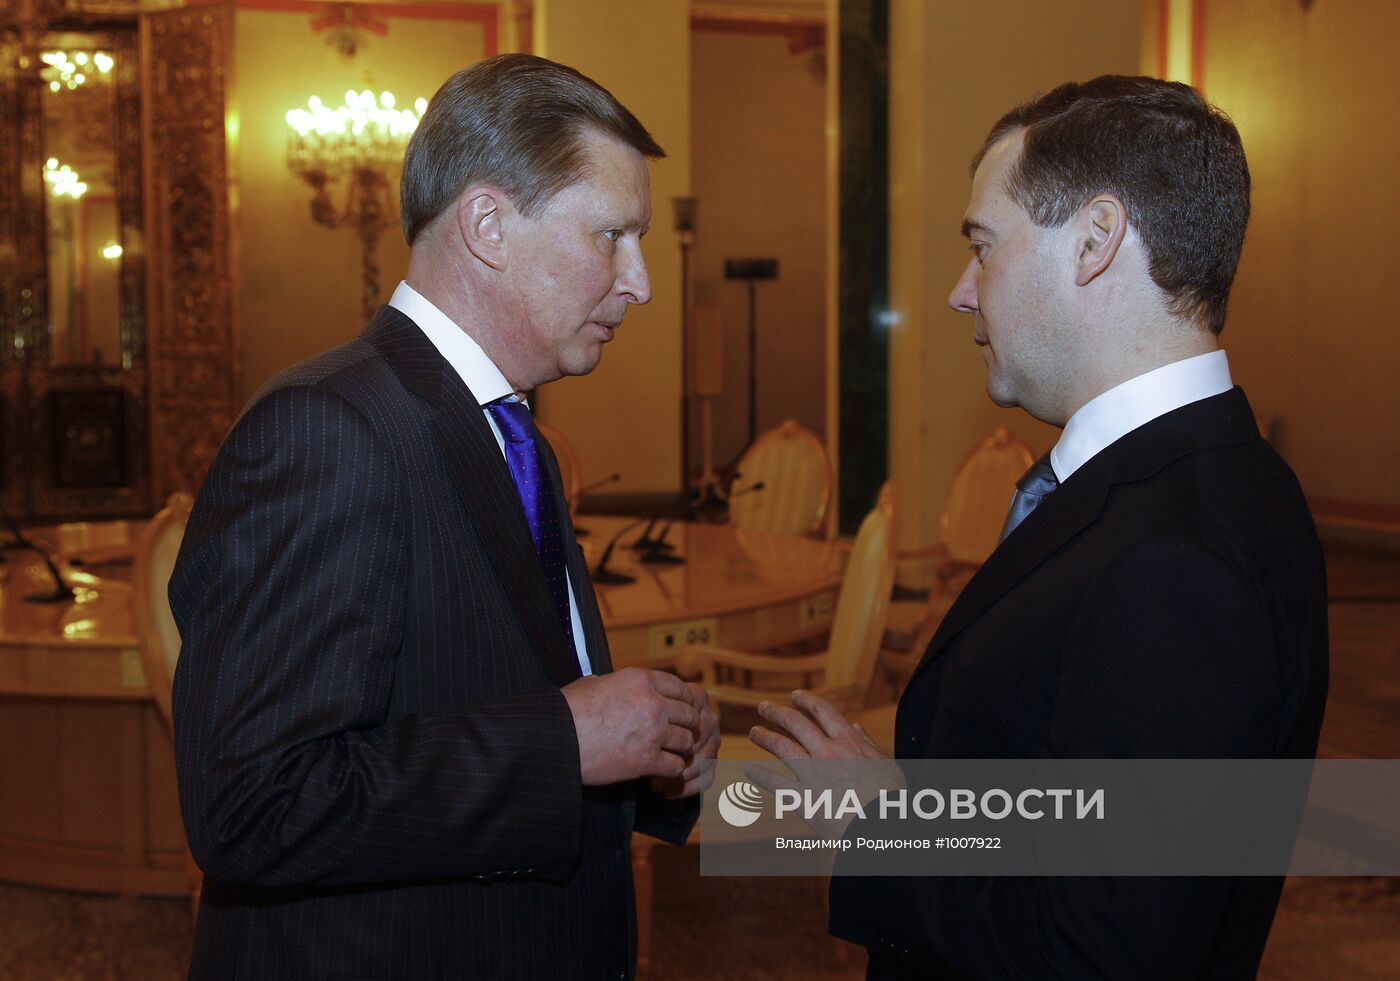 Д.Медведев провел ряд встреч 22 декабря 2011 г.